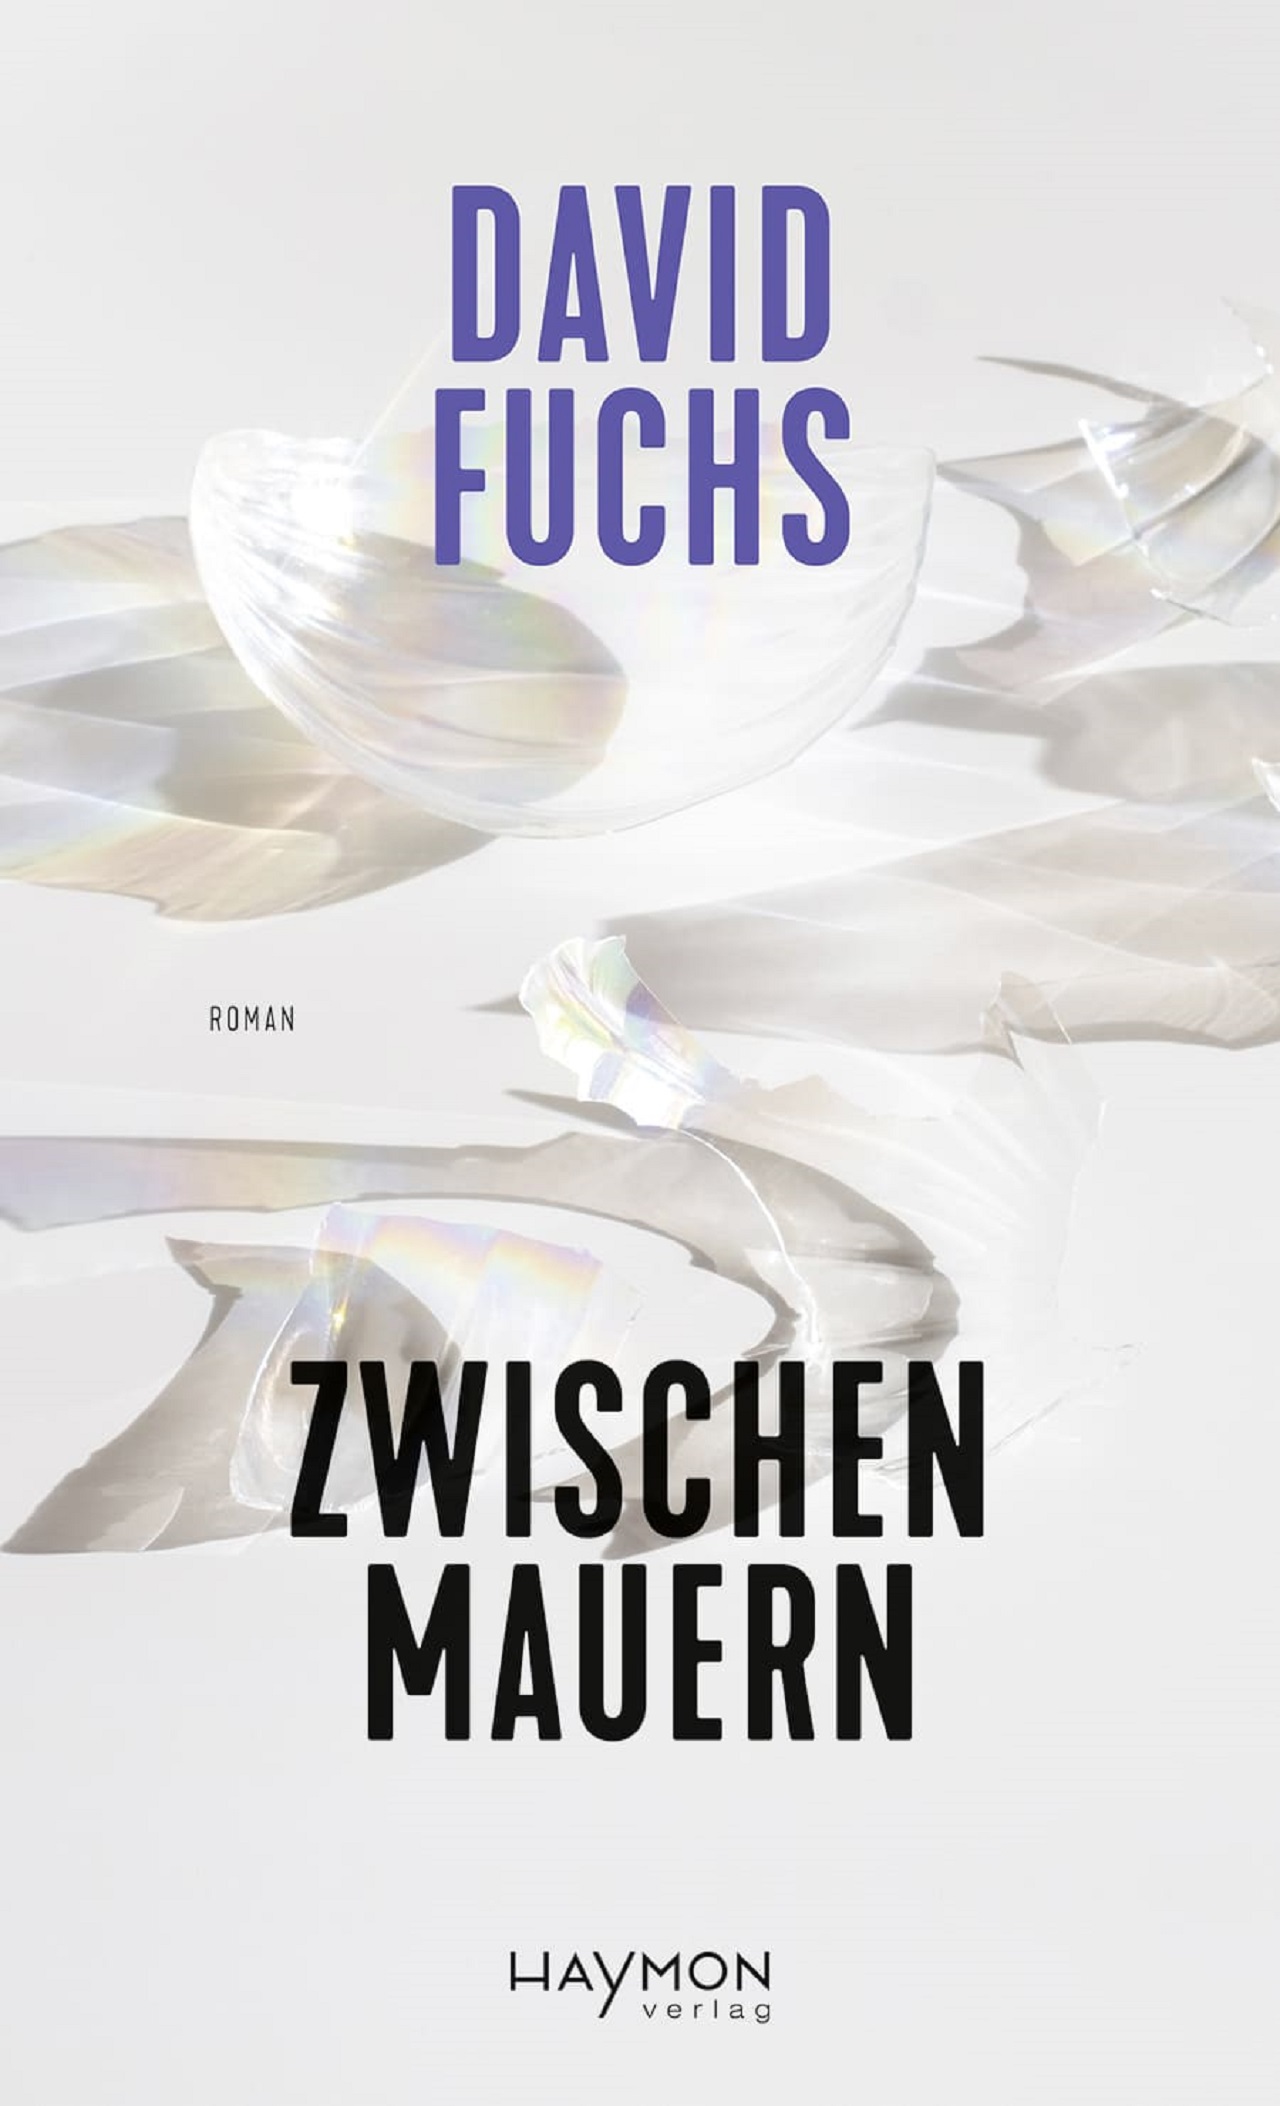 Das Buchcover von David Fuchs' neuem Roman "Zwischen Mauern" zeigt eine zerbrochene Glasscheibe.